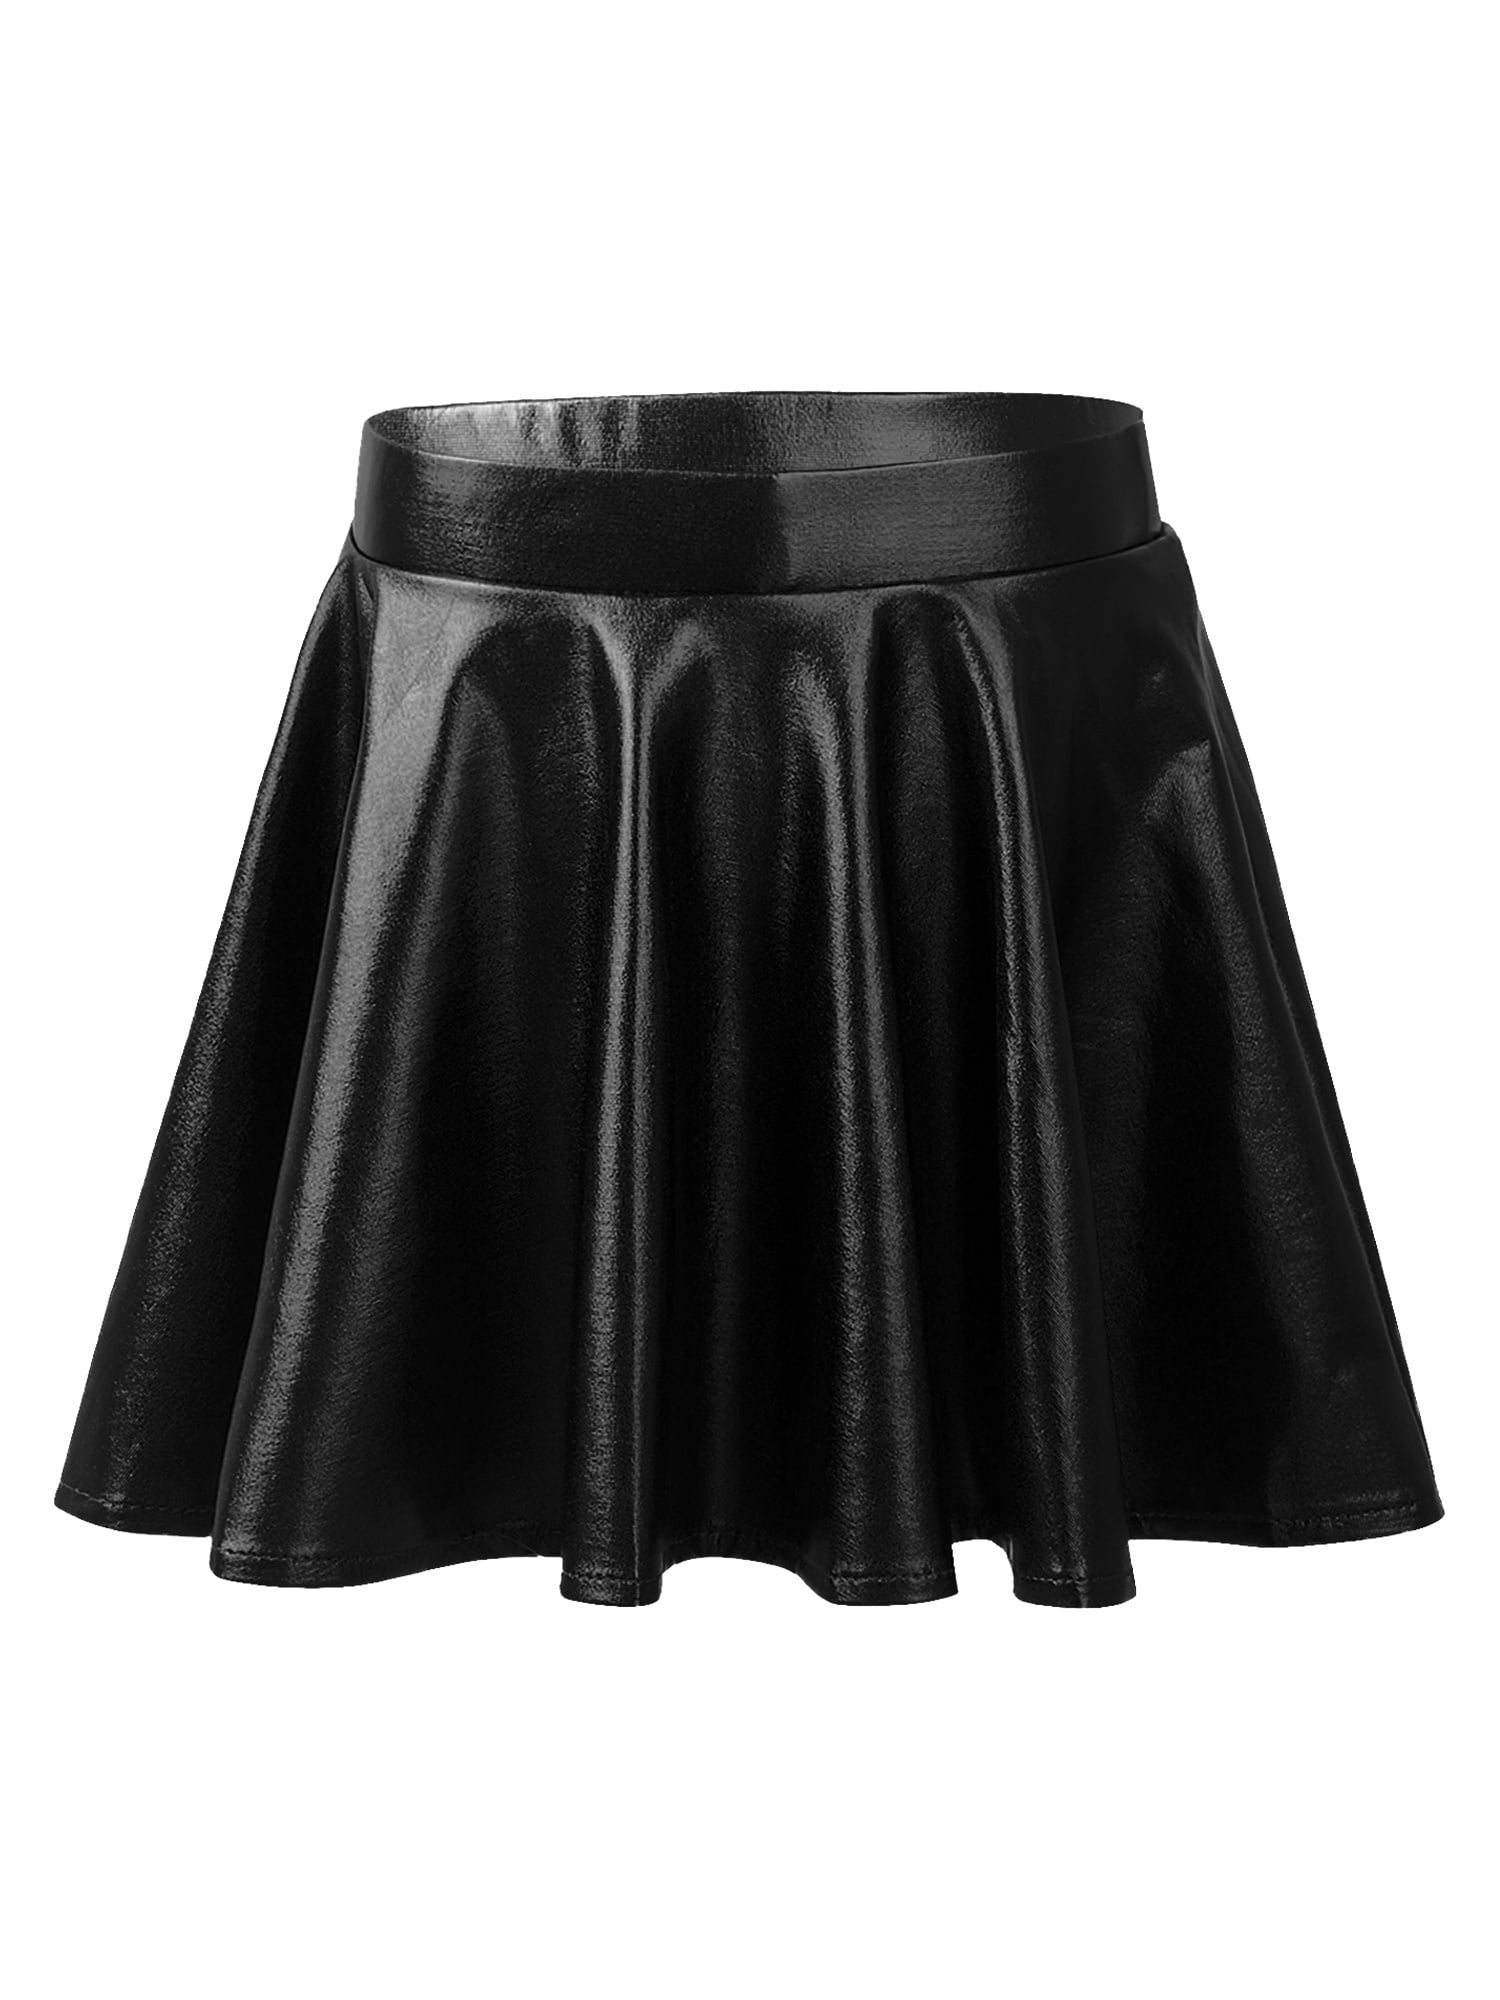 Aislor Kids Girls Shiny Metallic Pleated A-Line Skirt High Waist ...